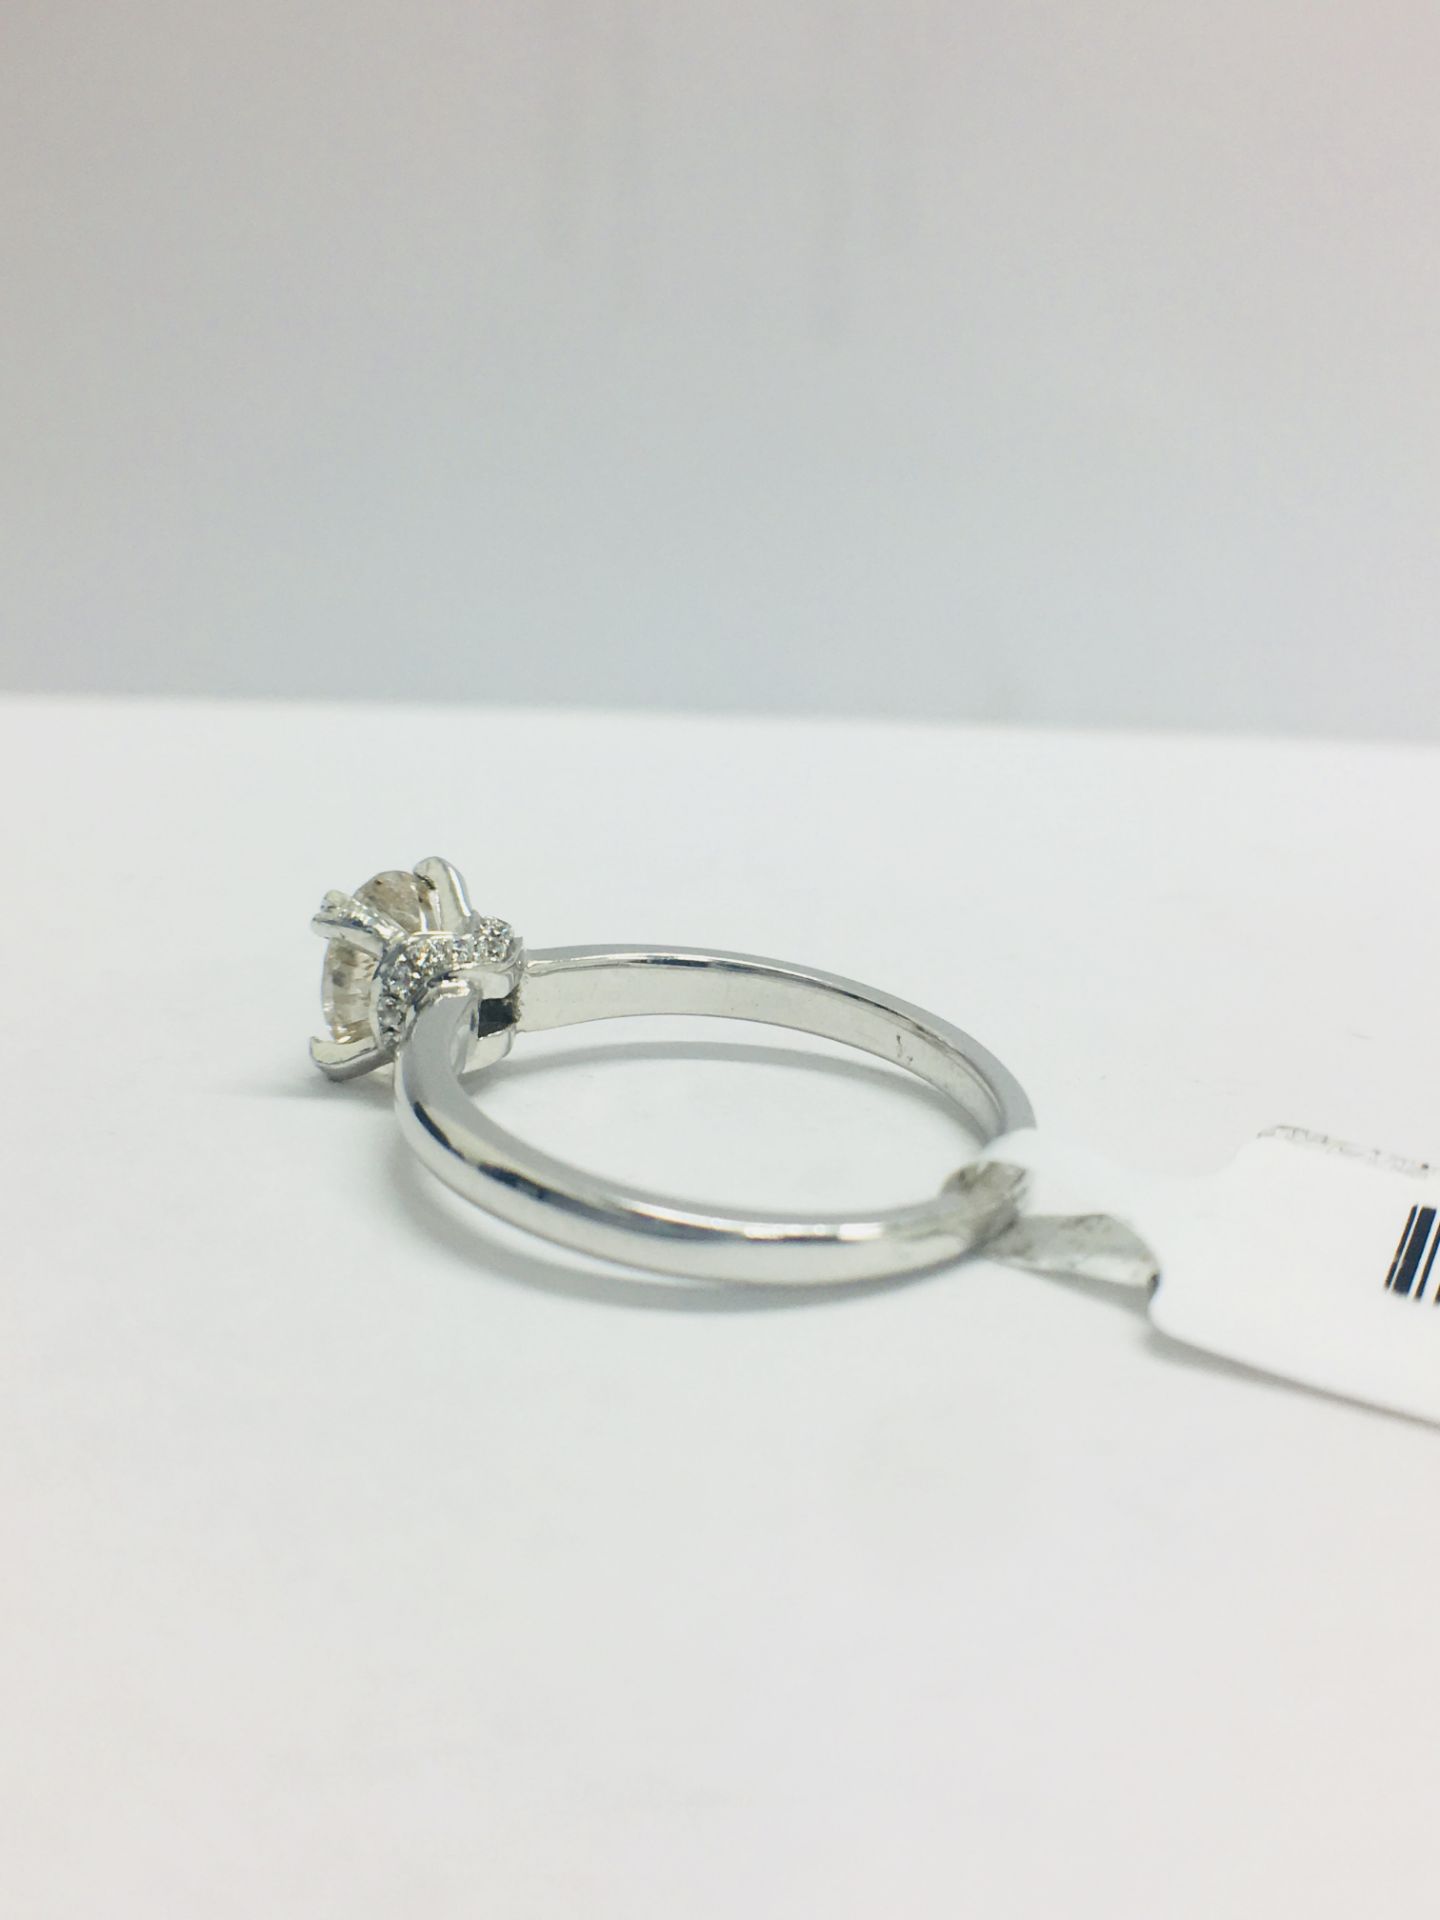 1ct Diamond Solitaire ring set in Platinum diamnd setting - Image 5 of 13